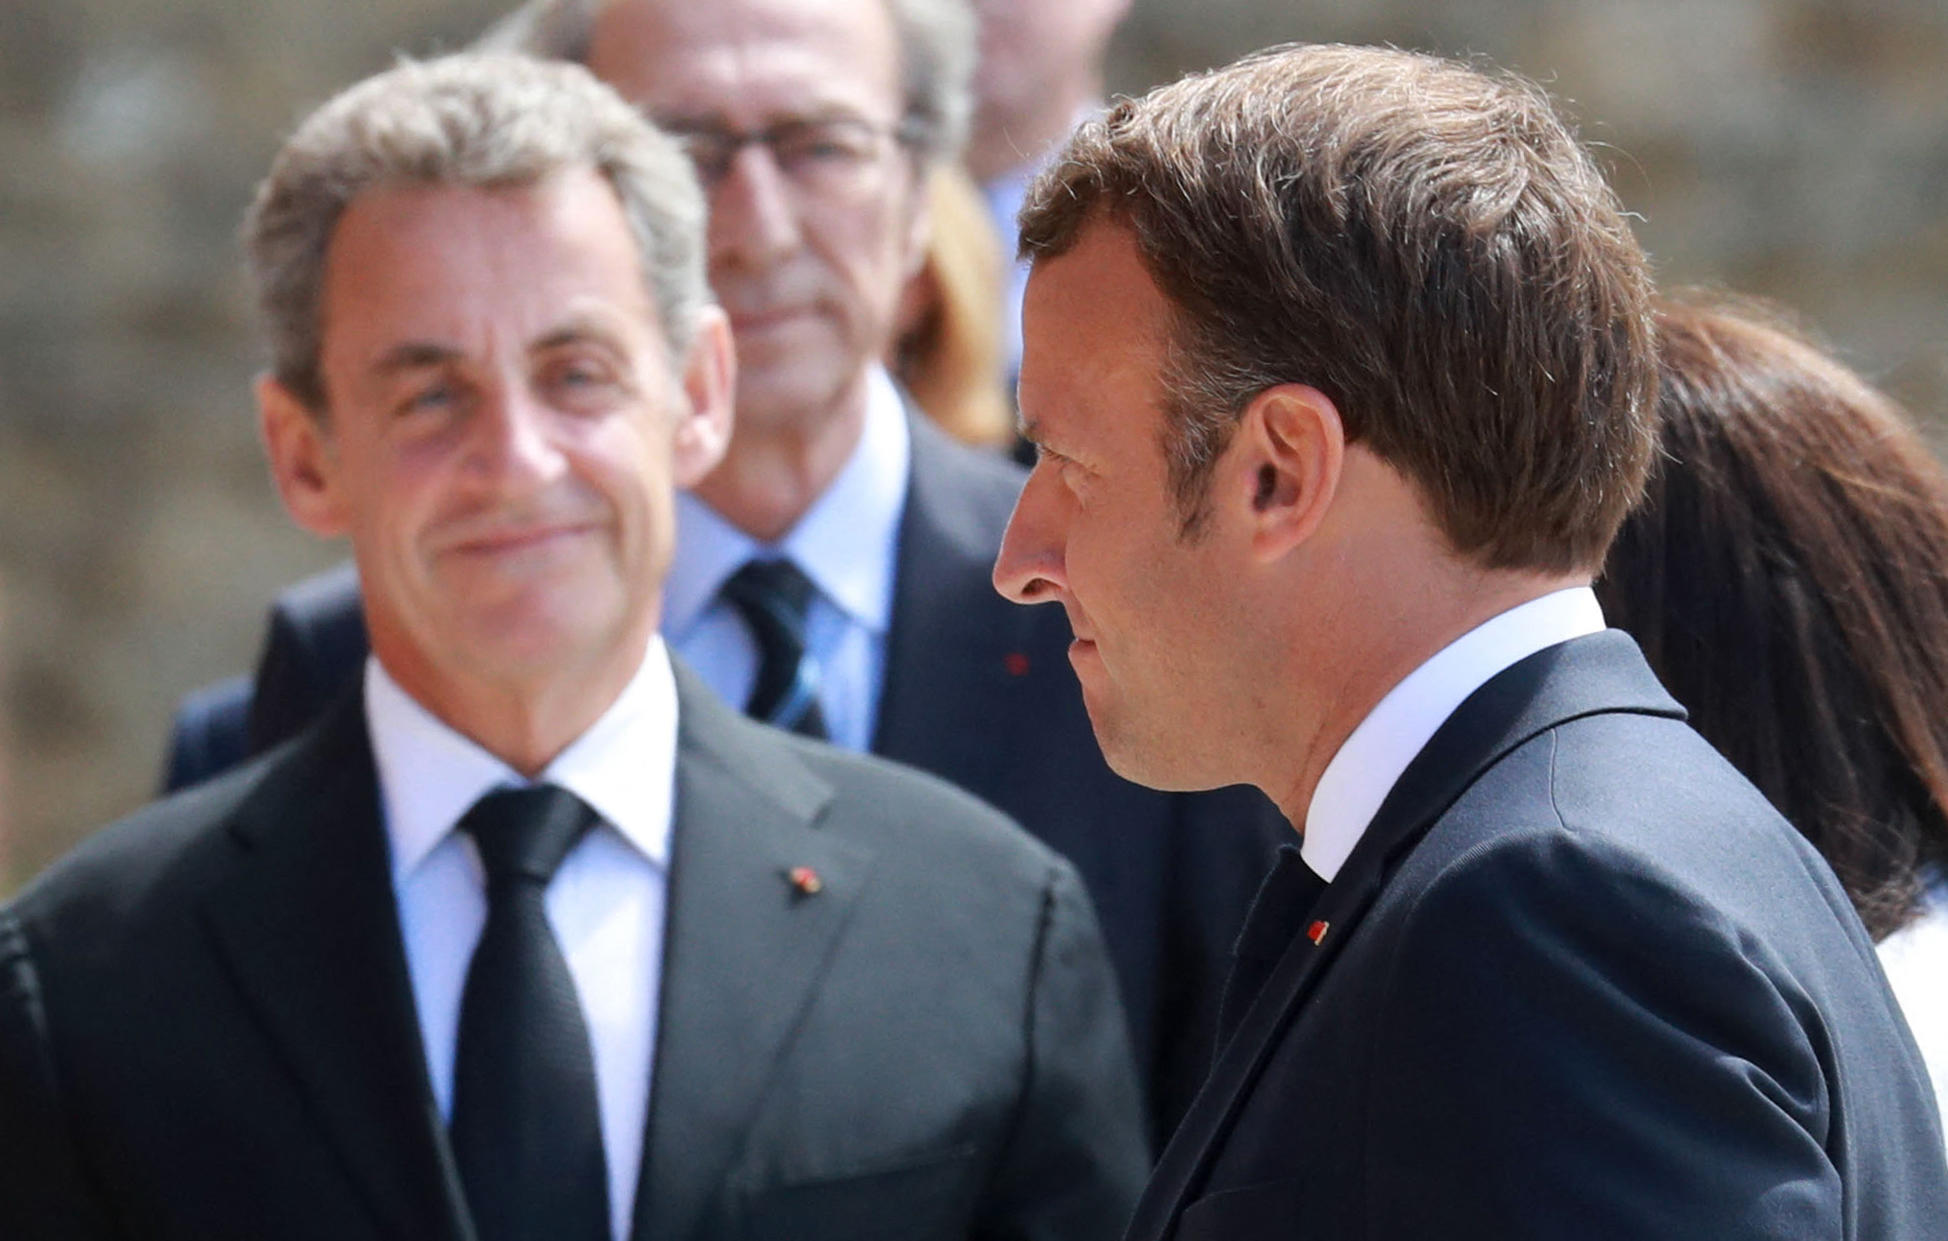 Les choix de Nicolas Sarkozy, qui n'a pas appelé à voter pour Valérie Pécresse avant le premier tour, puis apporté son soutien à Emmanuel Macron pour le second (ici les deux hommes en 2020 au Mont Valérien), interrogent ses fidèles à l'heure où LR joue sa survie. AFP/pool/Ludovic Marin